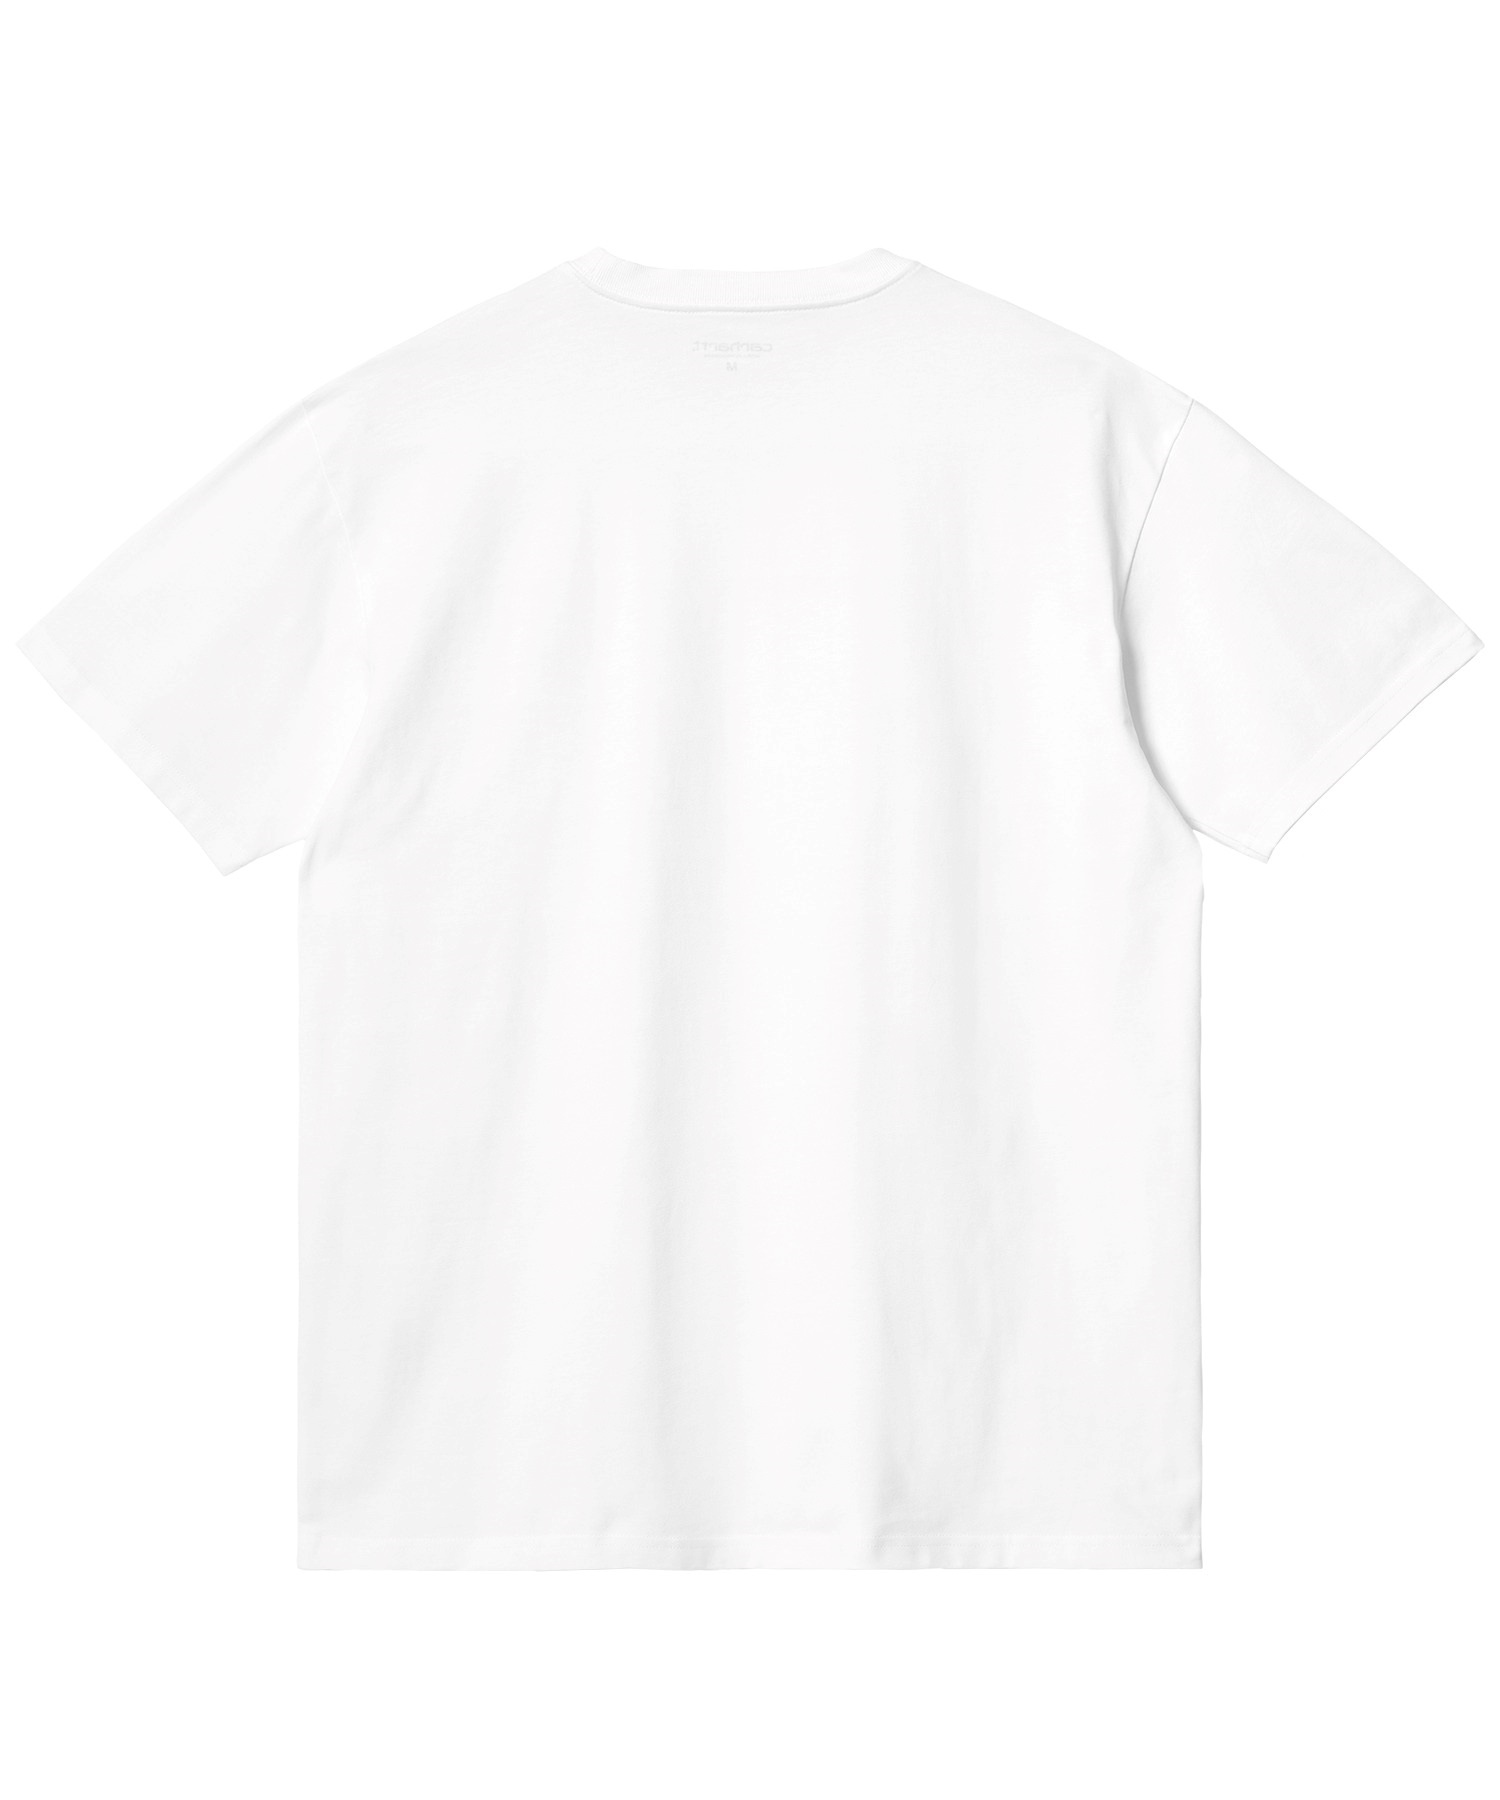 Carhartt カーハート S S CHASE T-SHIRT ルーズシルエット メンズ 半袖 Tシャツ I026391 WT GD(WT/GD-M)